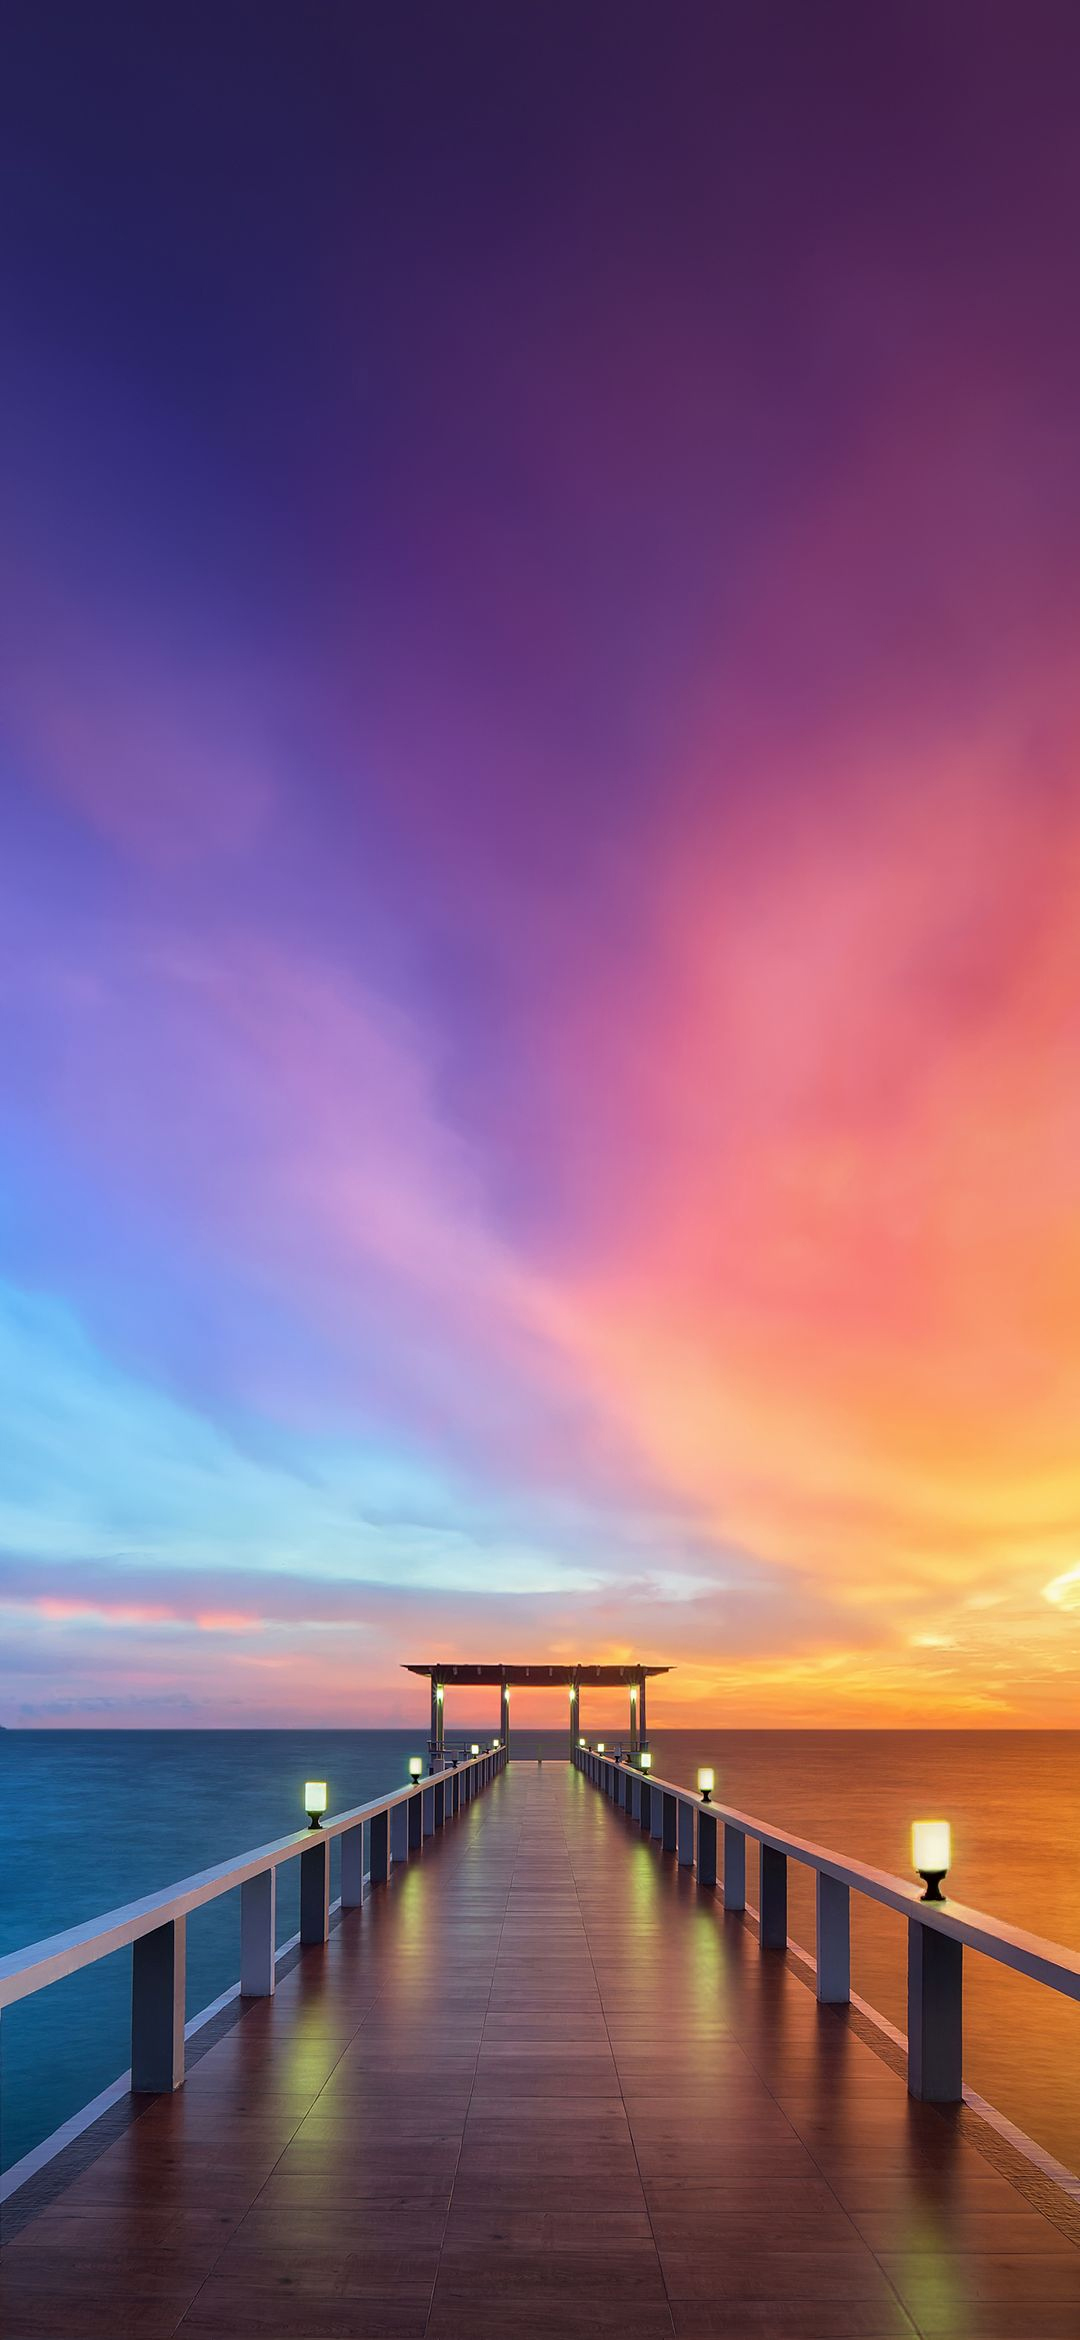 美しい桟橋と紫の空 Find X Android 壁紙 待ち受け スマラン